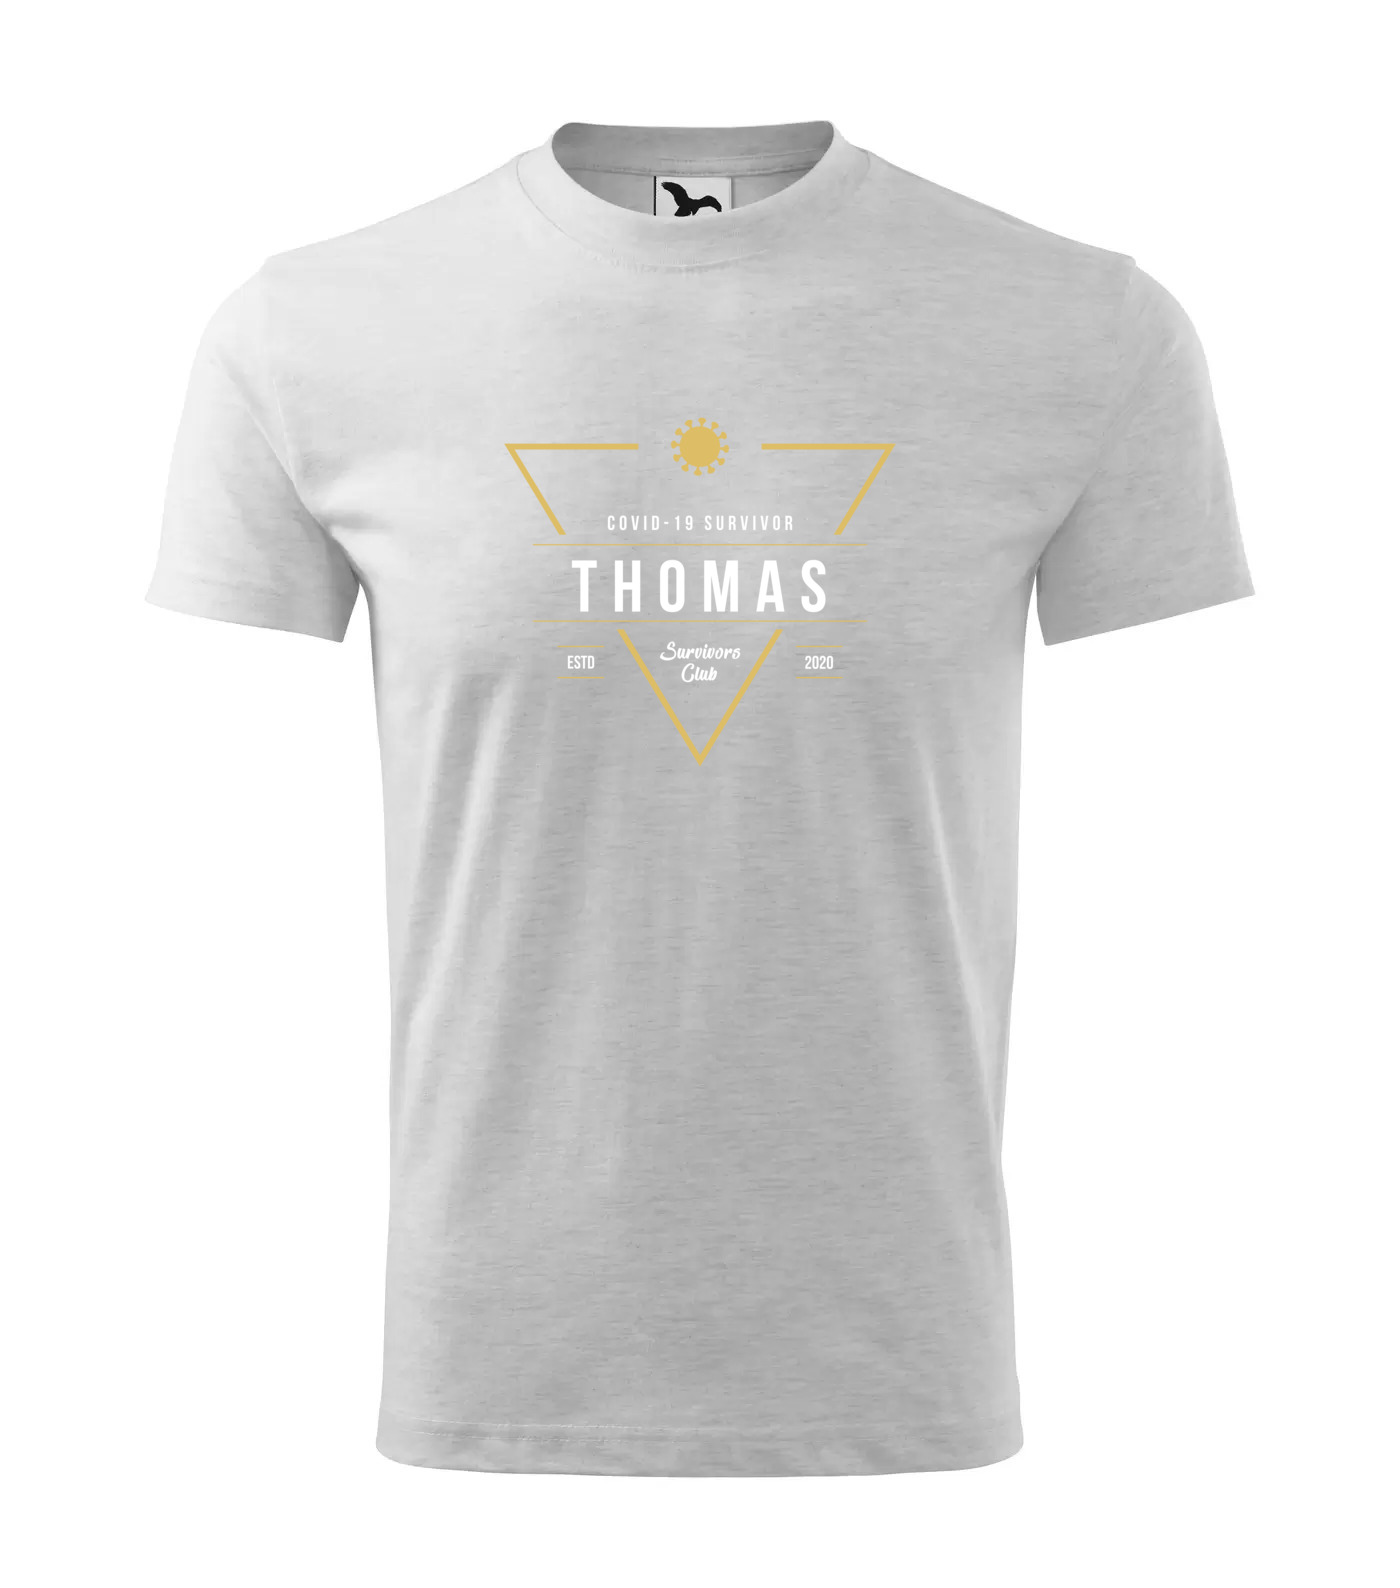 Tričko Survivor Club Thomas